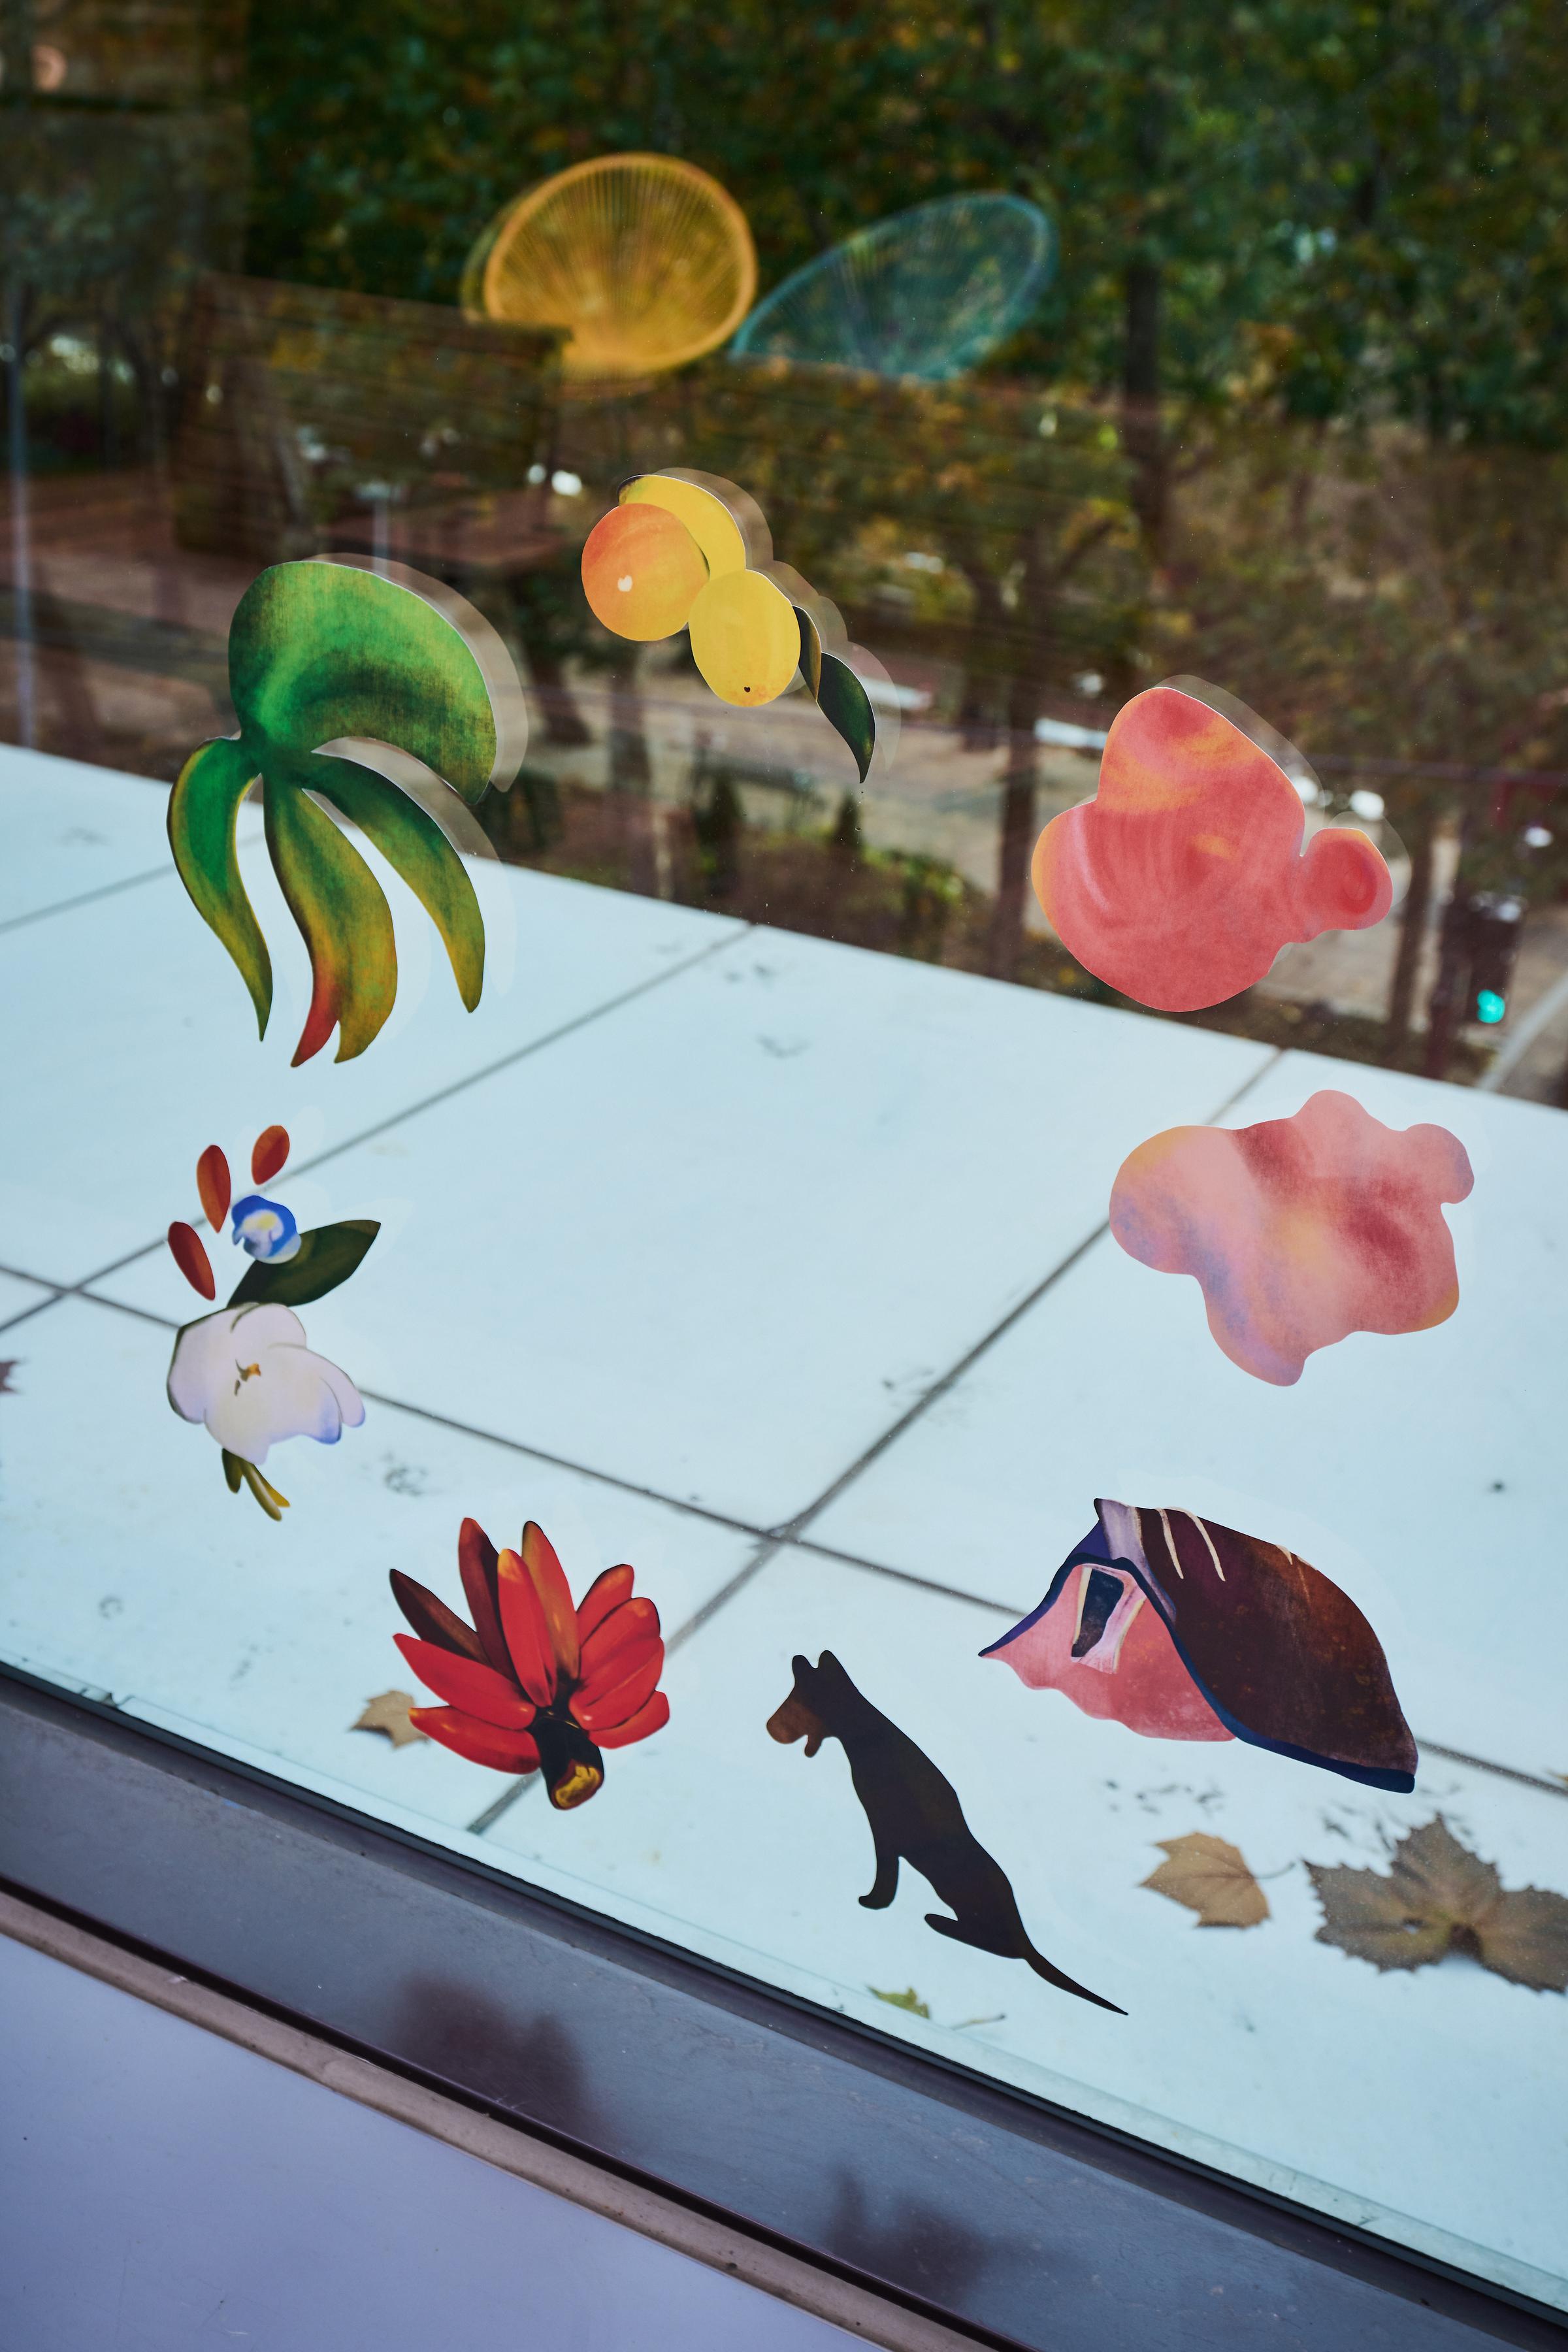 투명 창에 꽃과 열매, 나뭇잎 등의 스티커가 둥글게 붙어있는 사진